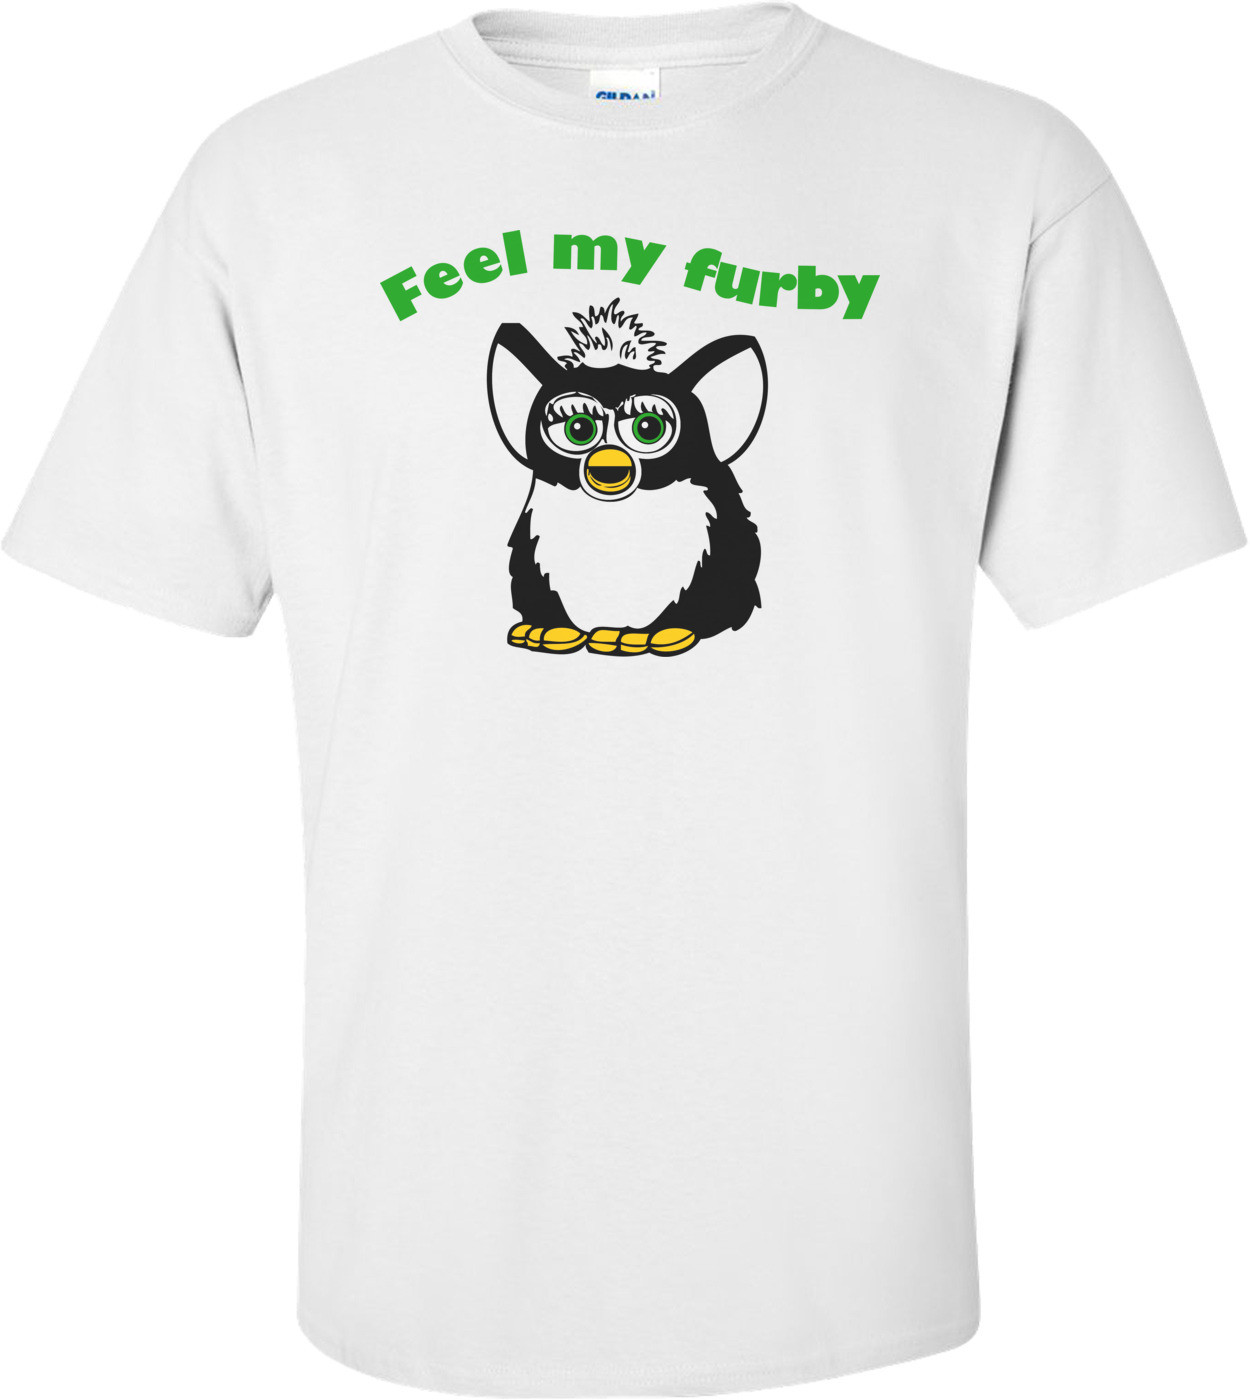 Feel My Furby T-shirt